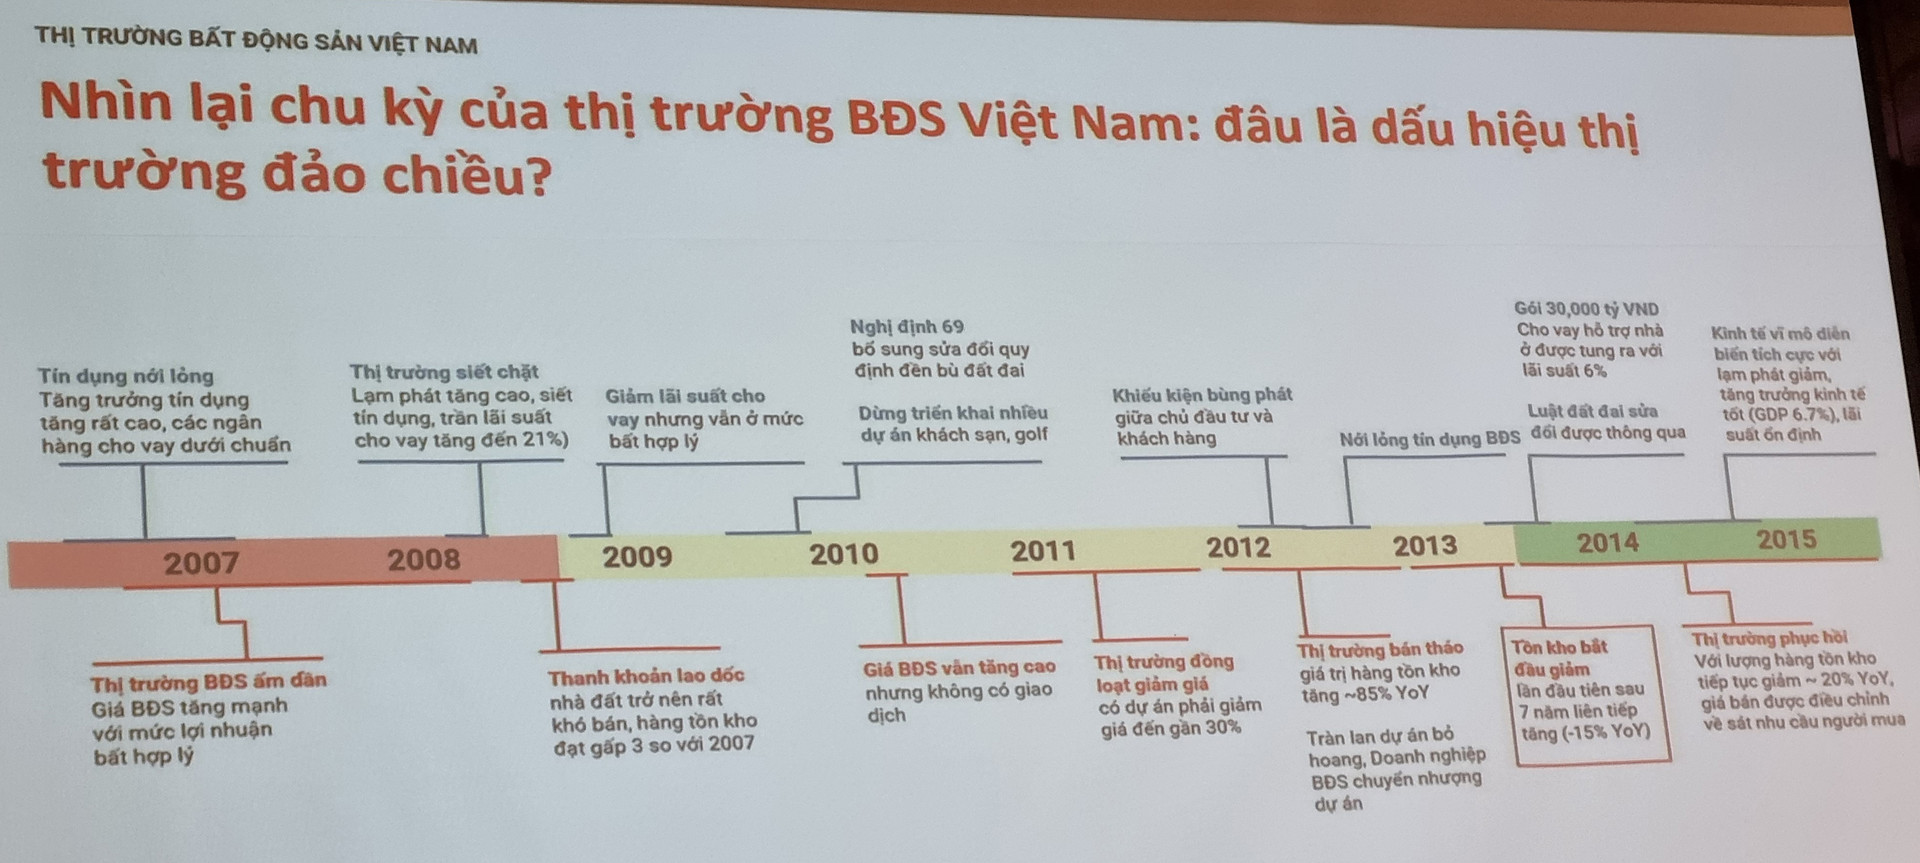 'Soi' chu kỳ 9 năm của BĐS Việt Nam, chuyên gia chỉ ra 3 chỉ báo thị trường sắp có tín hiệu đảo chiều - Ảnh 2.